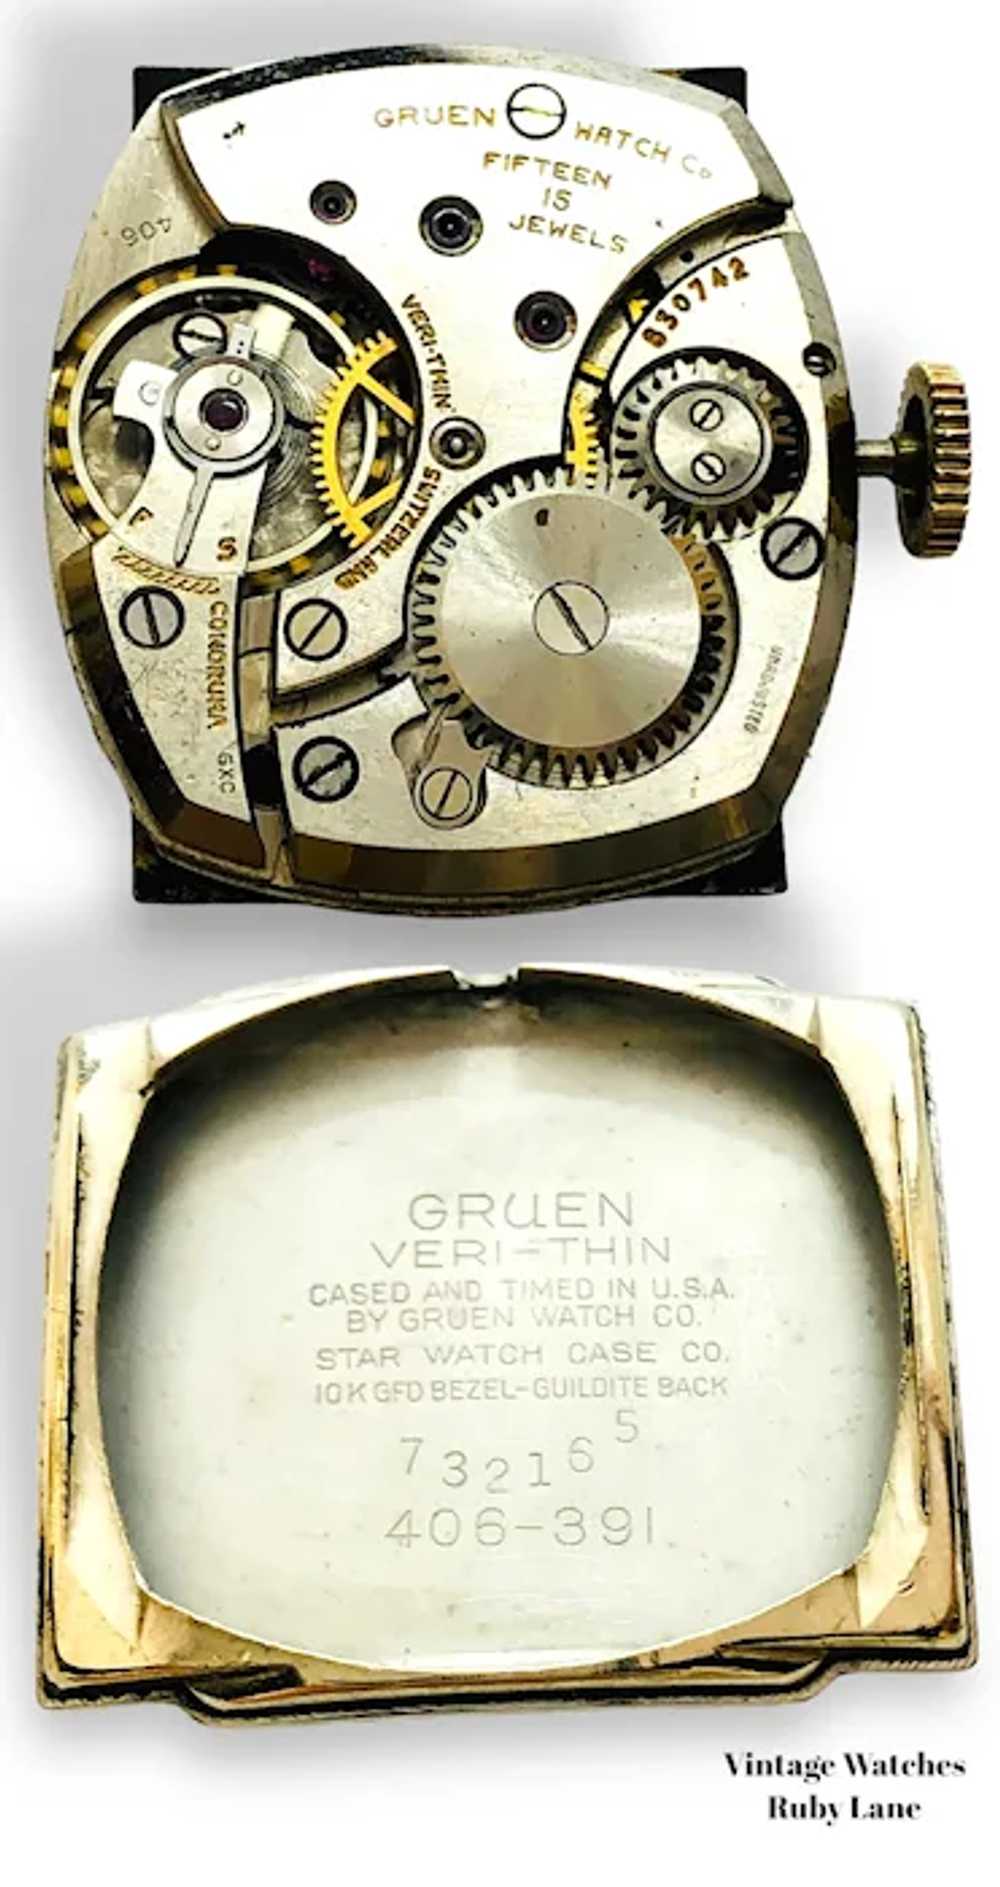 1939 Gruen Savoy Veri-Thin Dress Watch - image 11